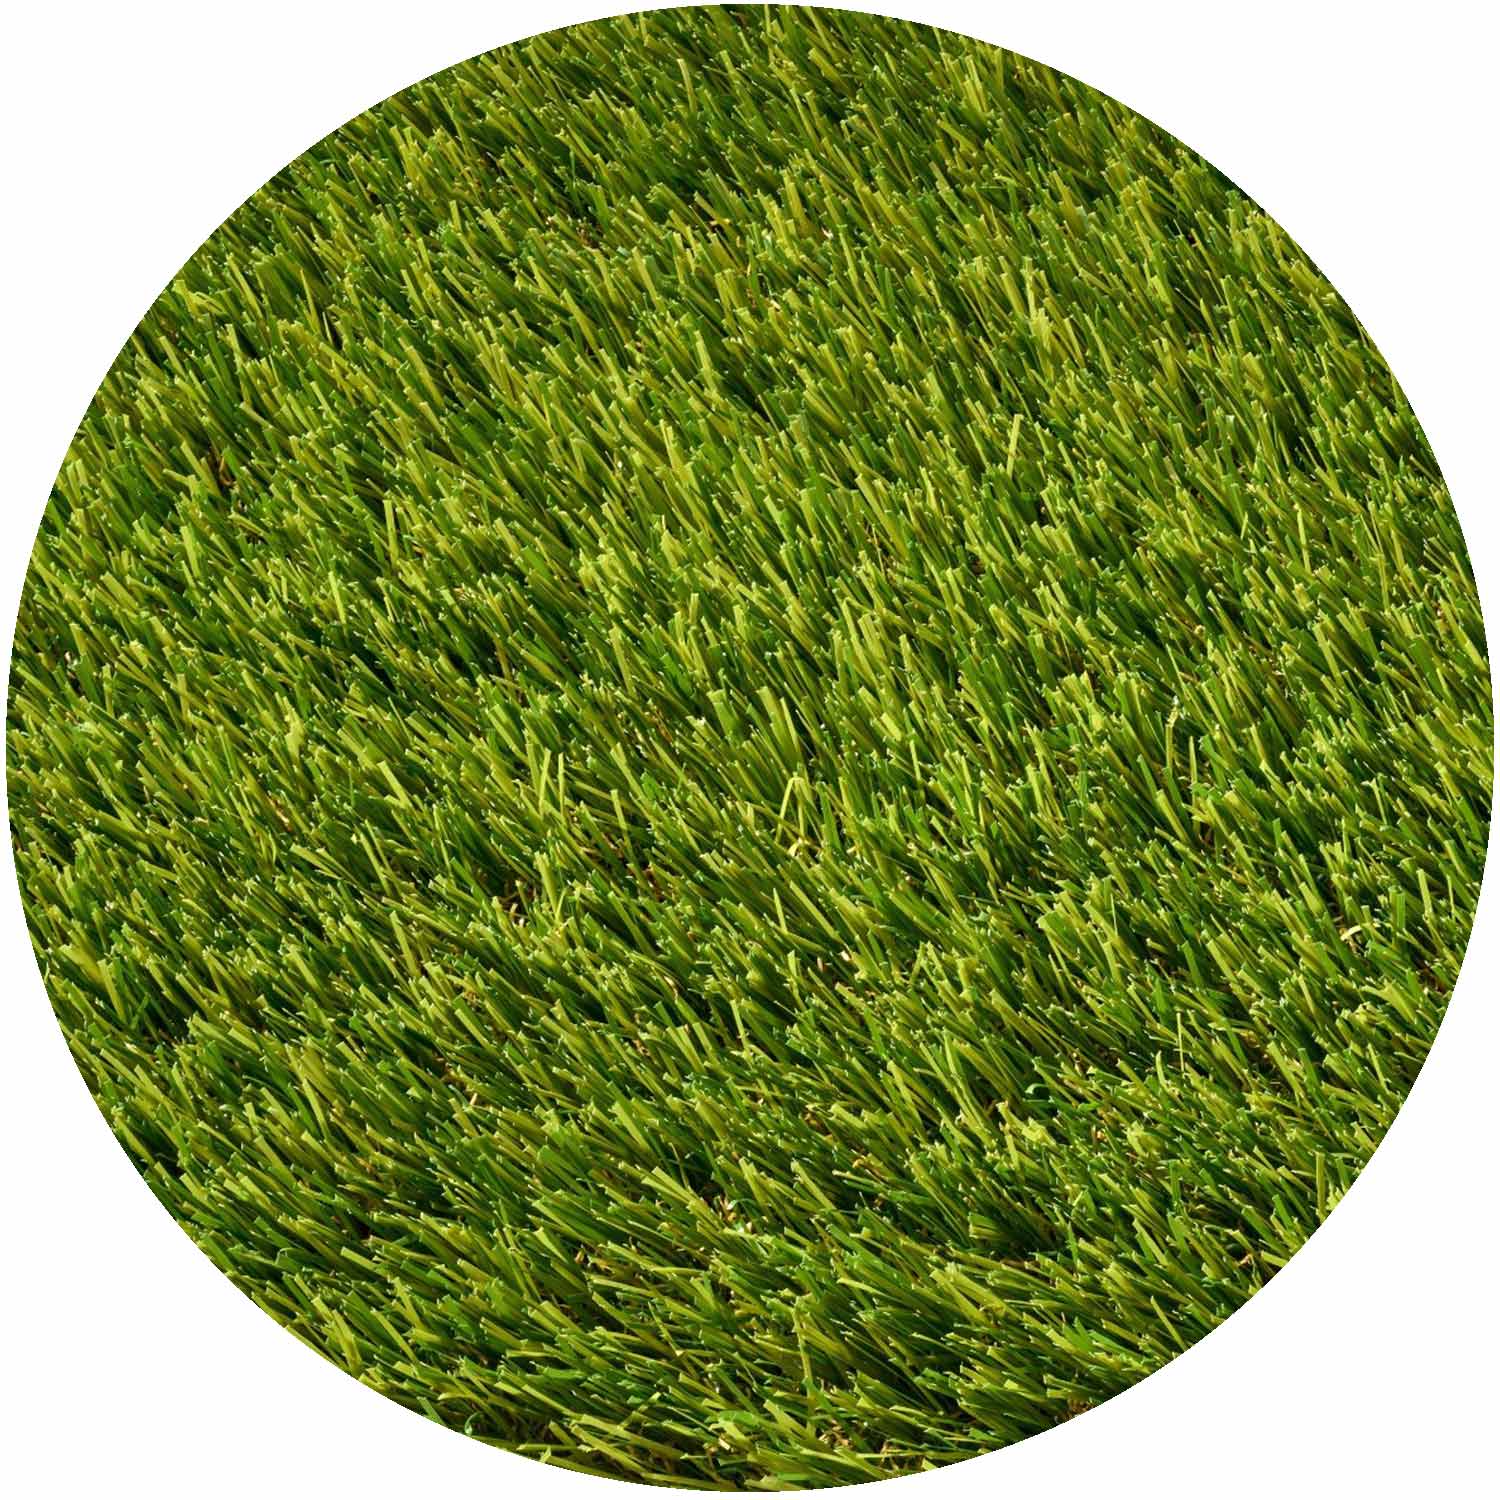 Huracan 30mm Pile Artificial Grass per mtr